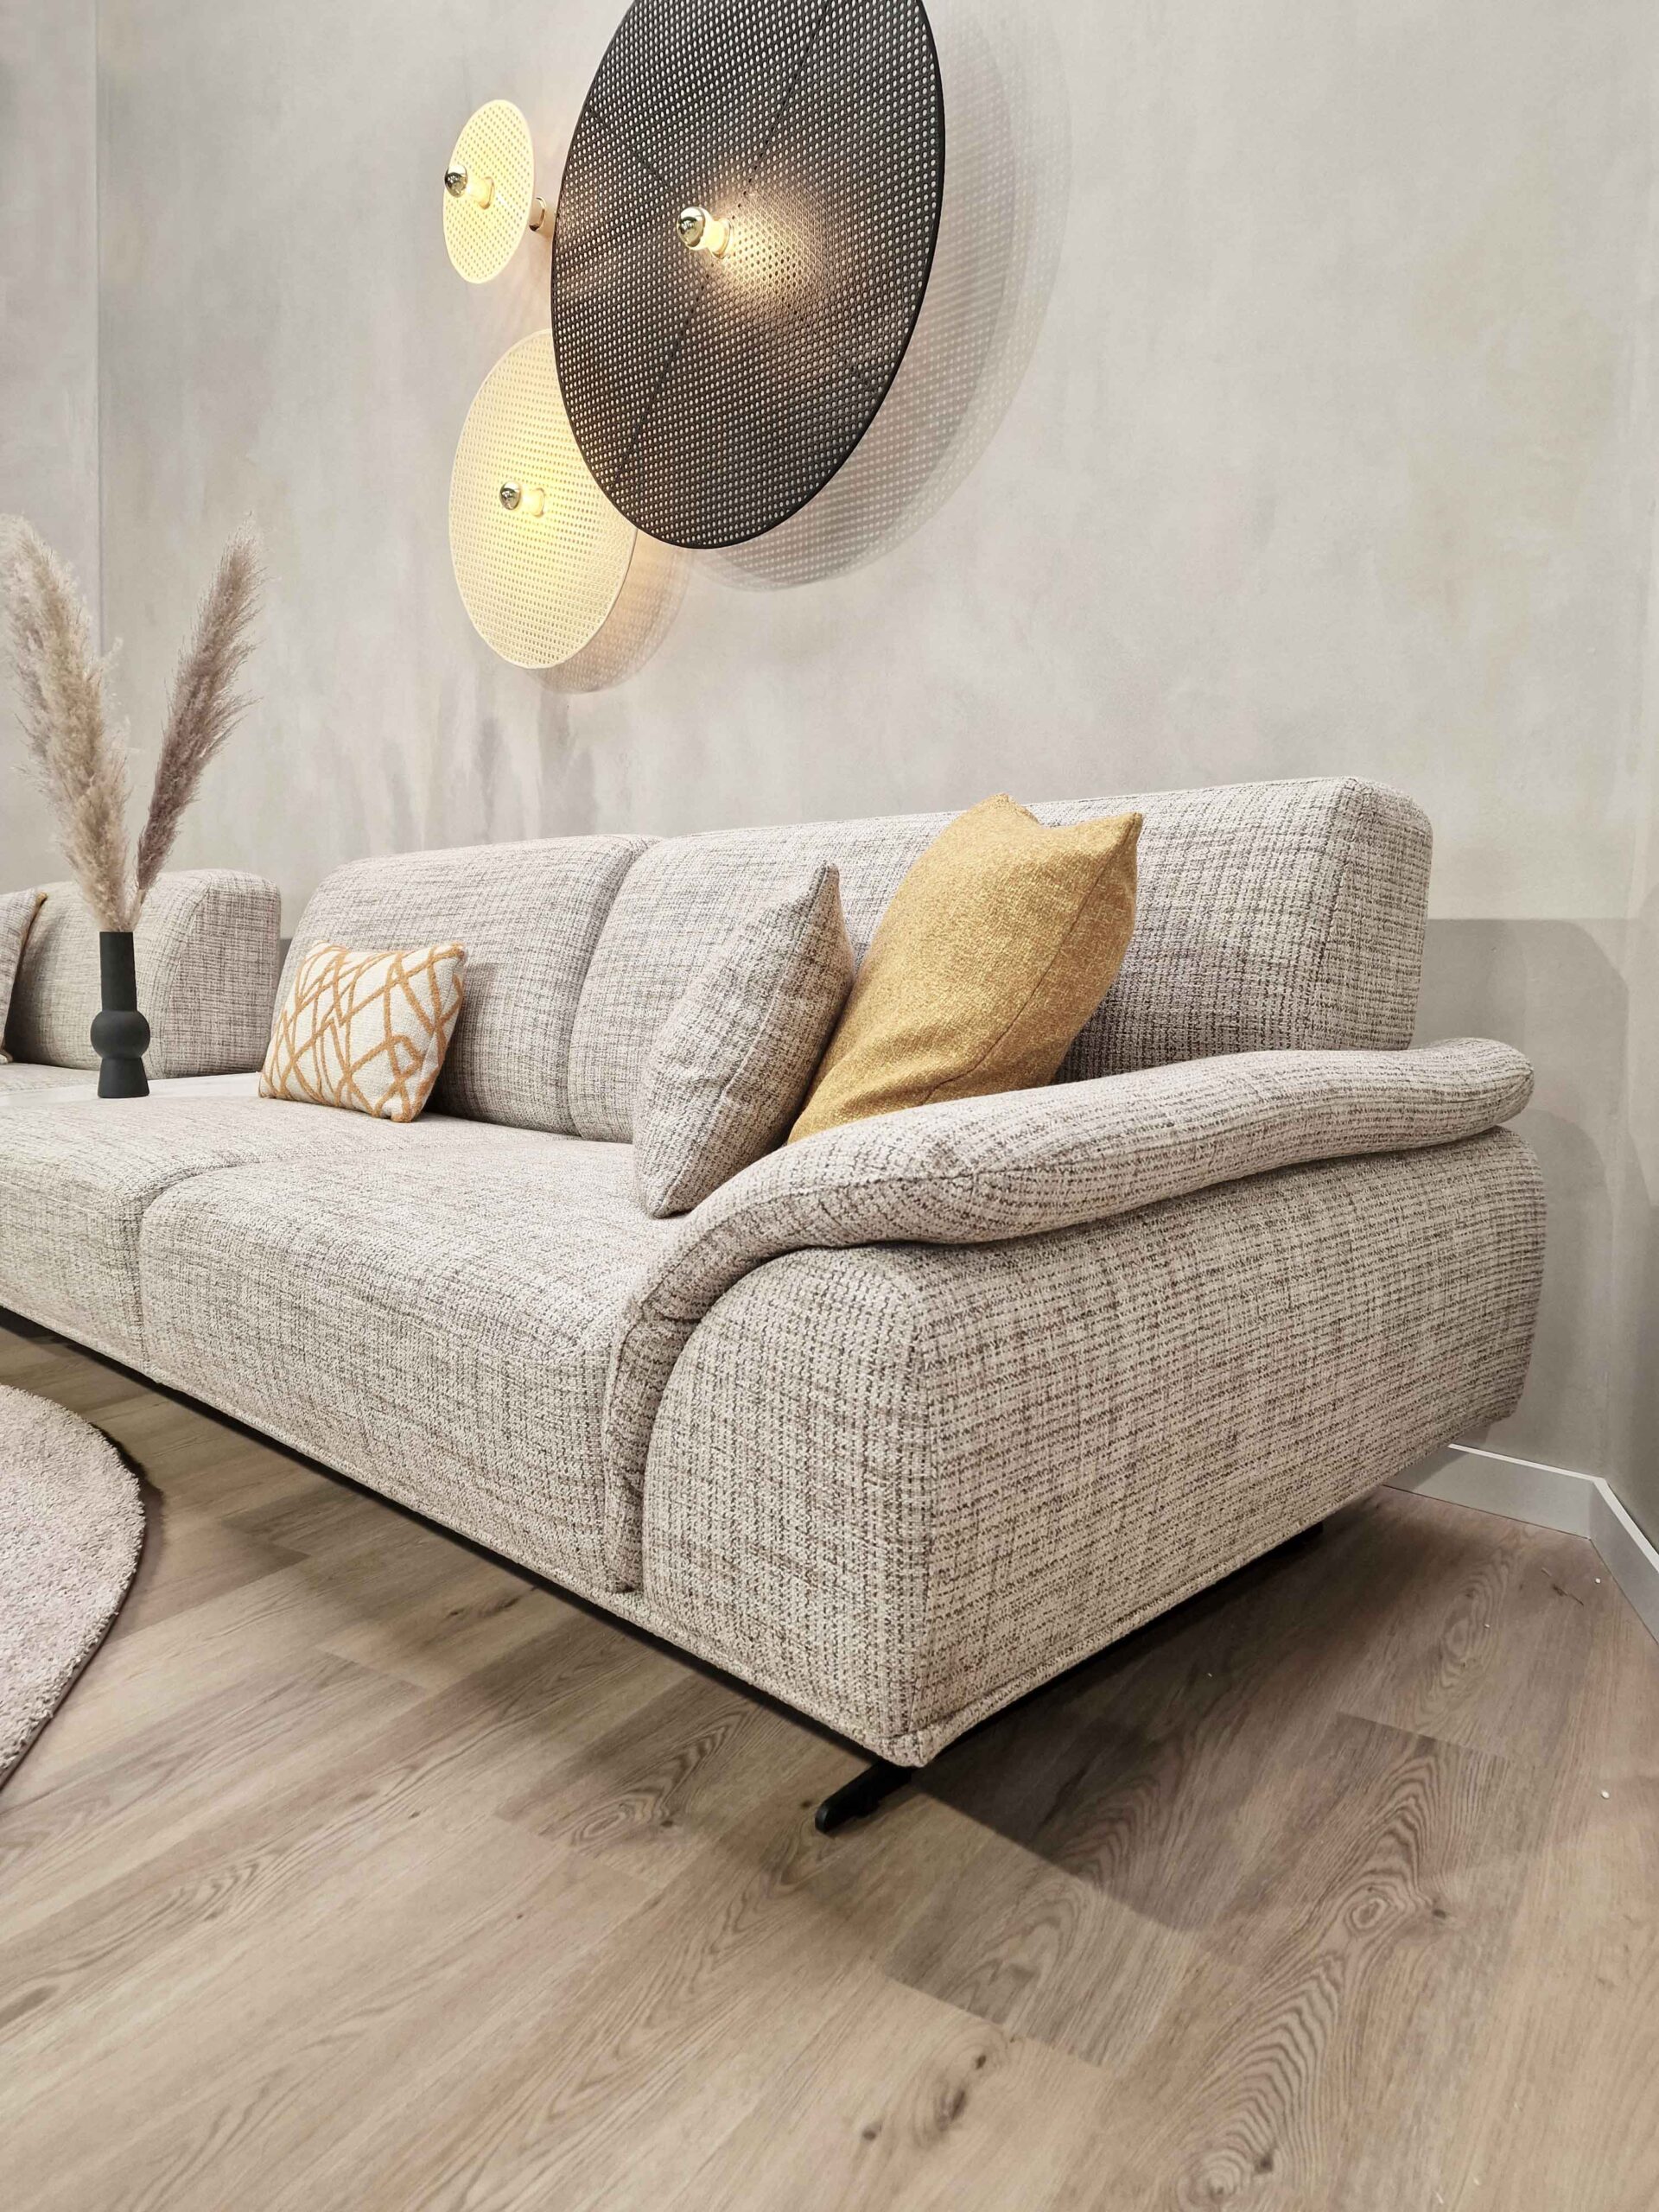 leeuwerik Scarp dynamisch Design zetels van Evolution | Sienna sofa: Strakke sofa met ronde vormen.